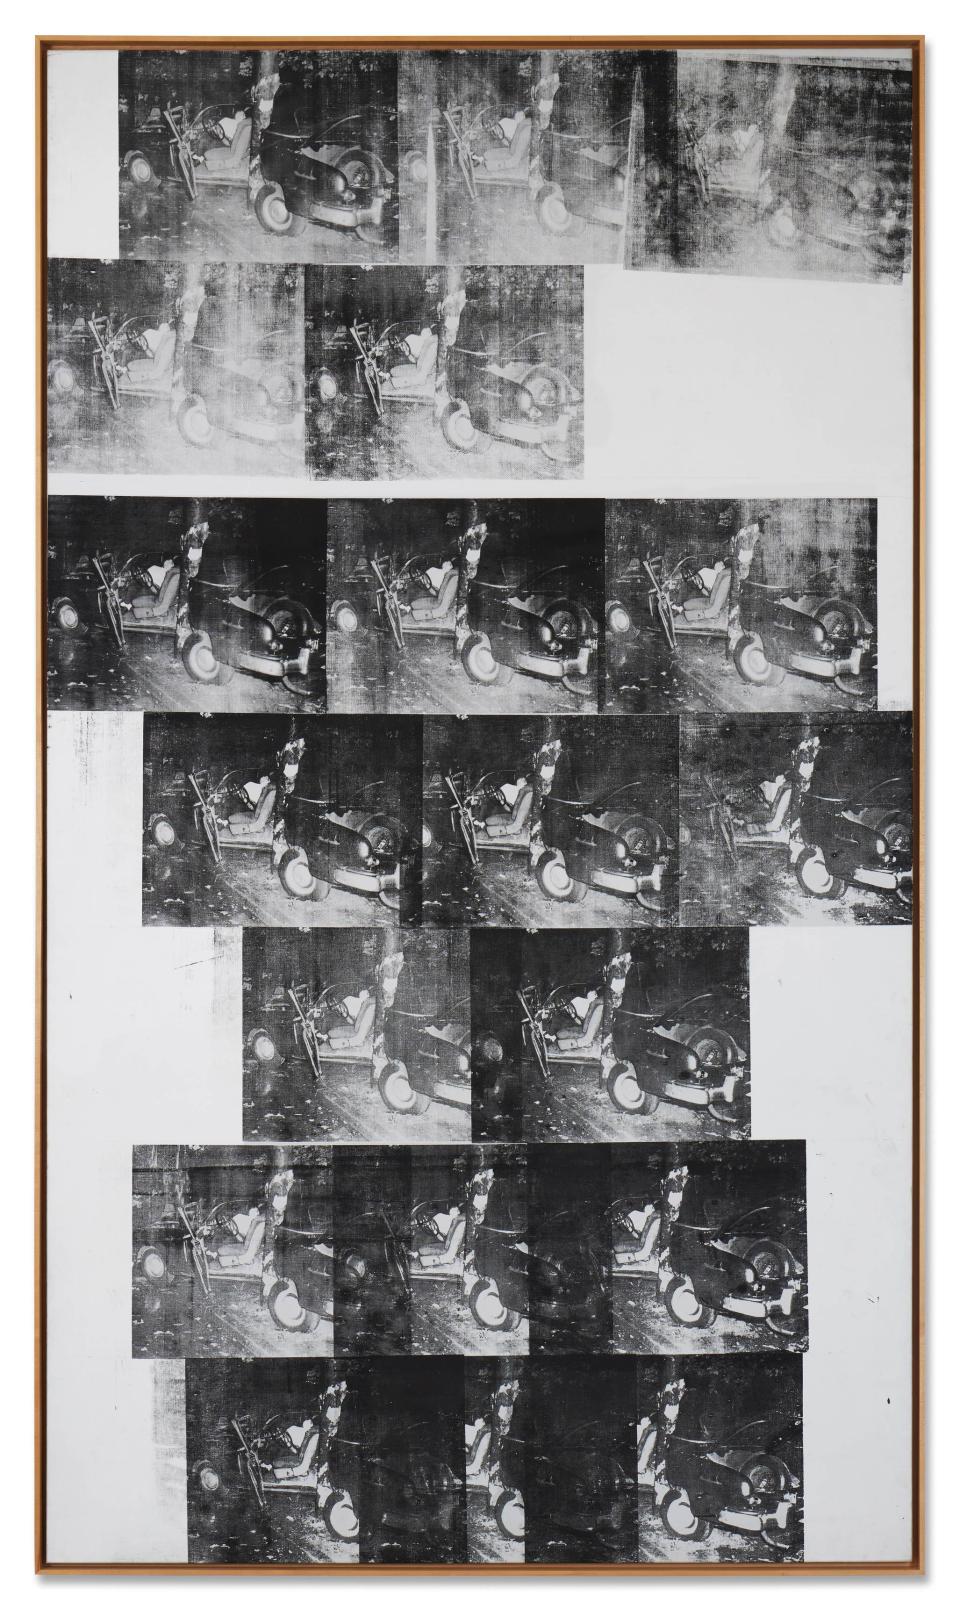 Andy Warhol "White Disaster (White Car Crash 19 Times)", 1963